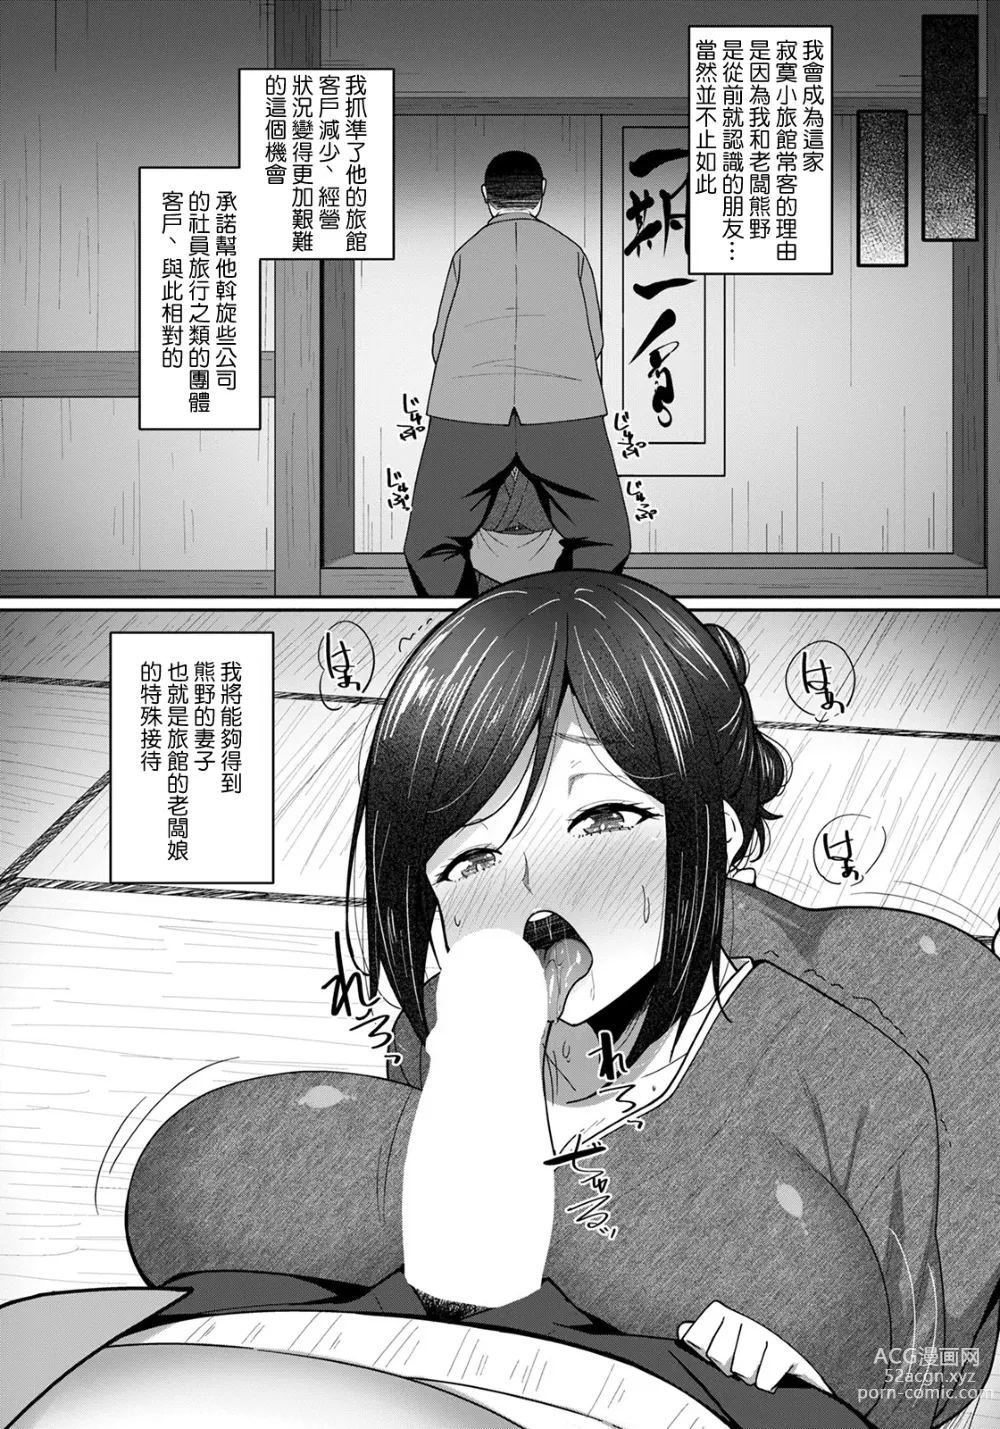 Page 2 of manga Okami no Netorare Omotenashi